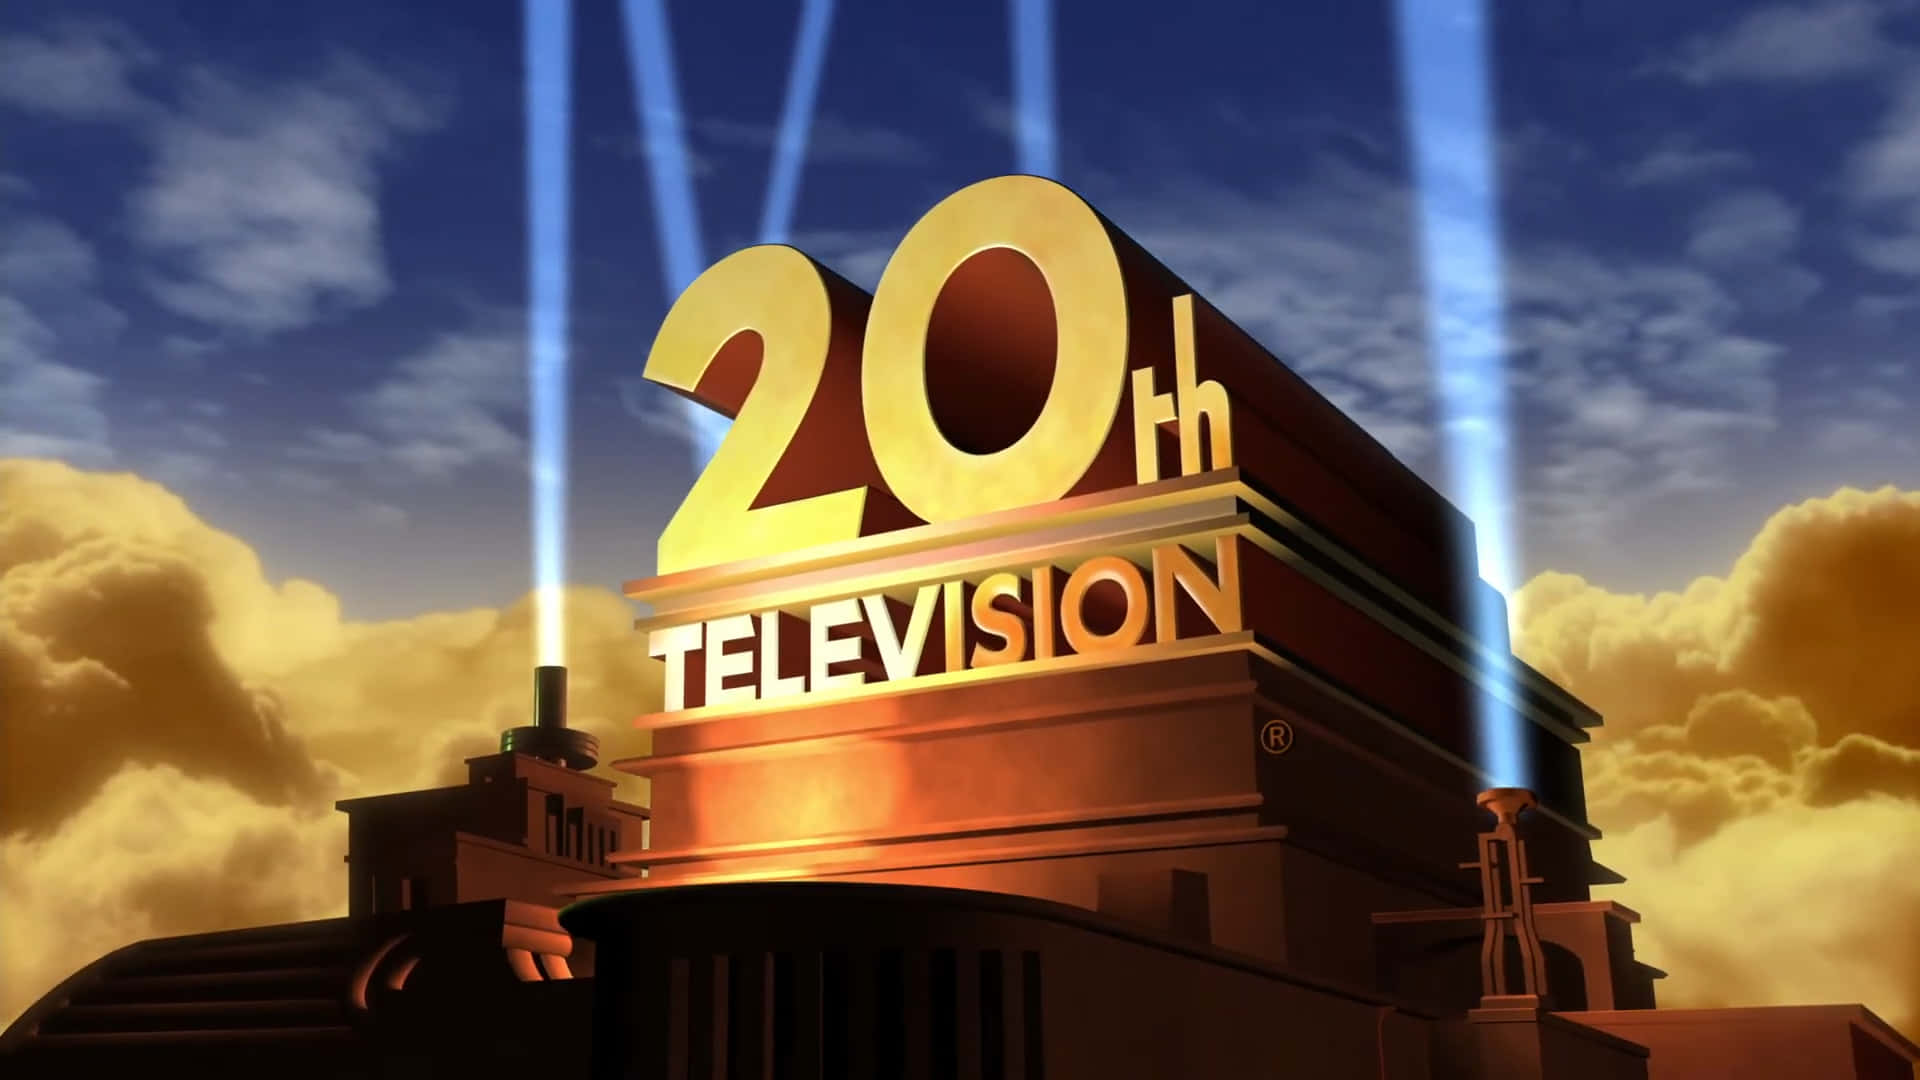 20thtelevision-logotyp Med En Ljusstråle Som Lyser På Den.